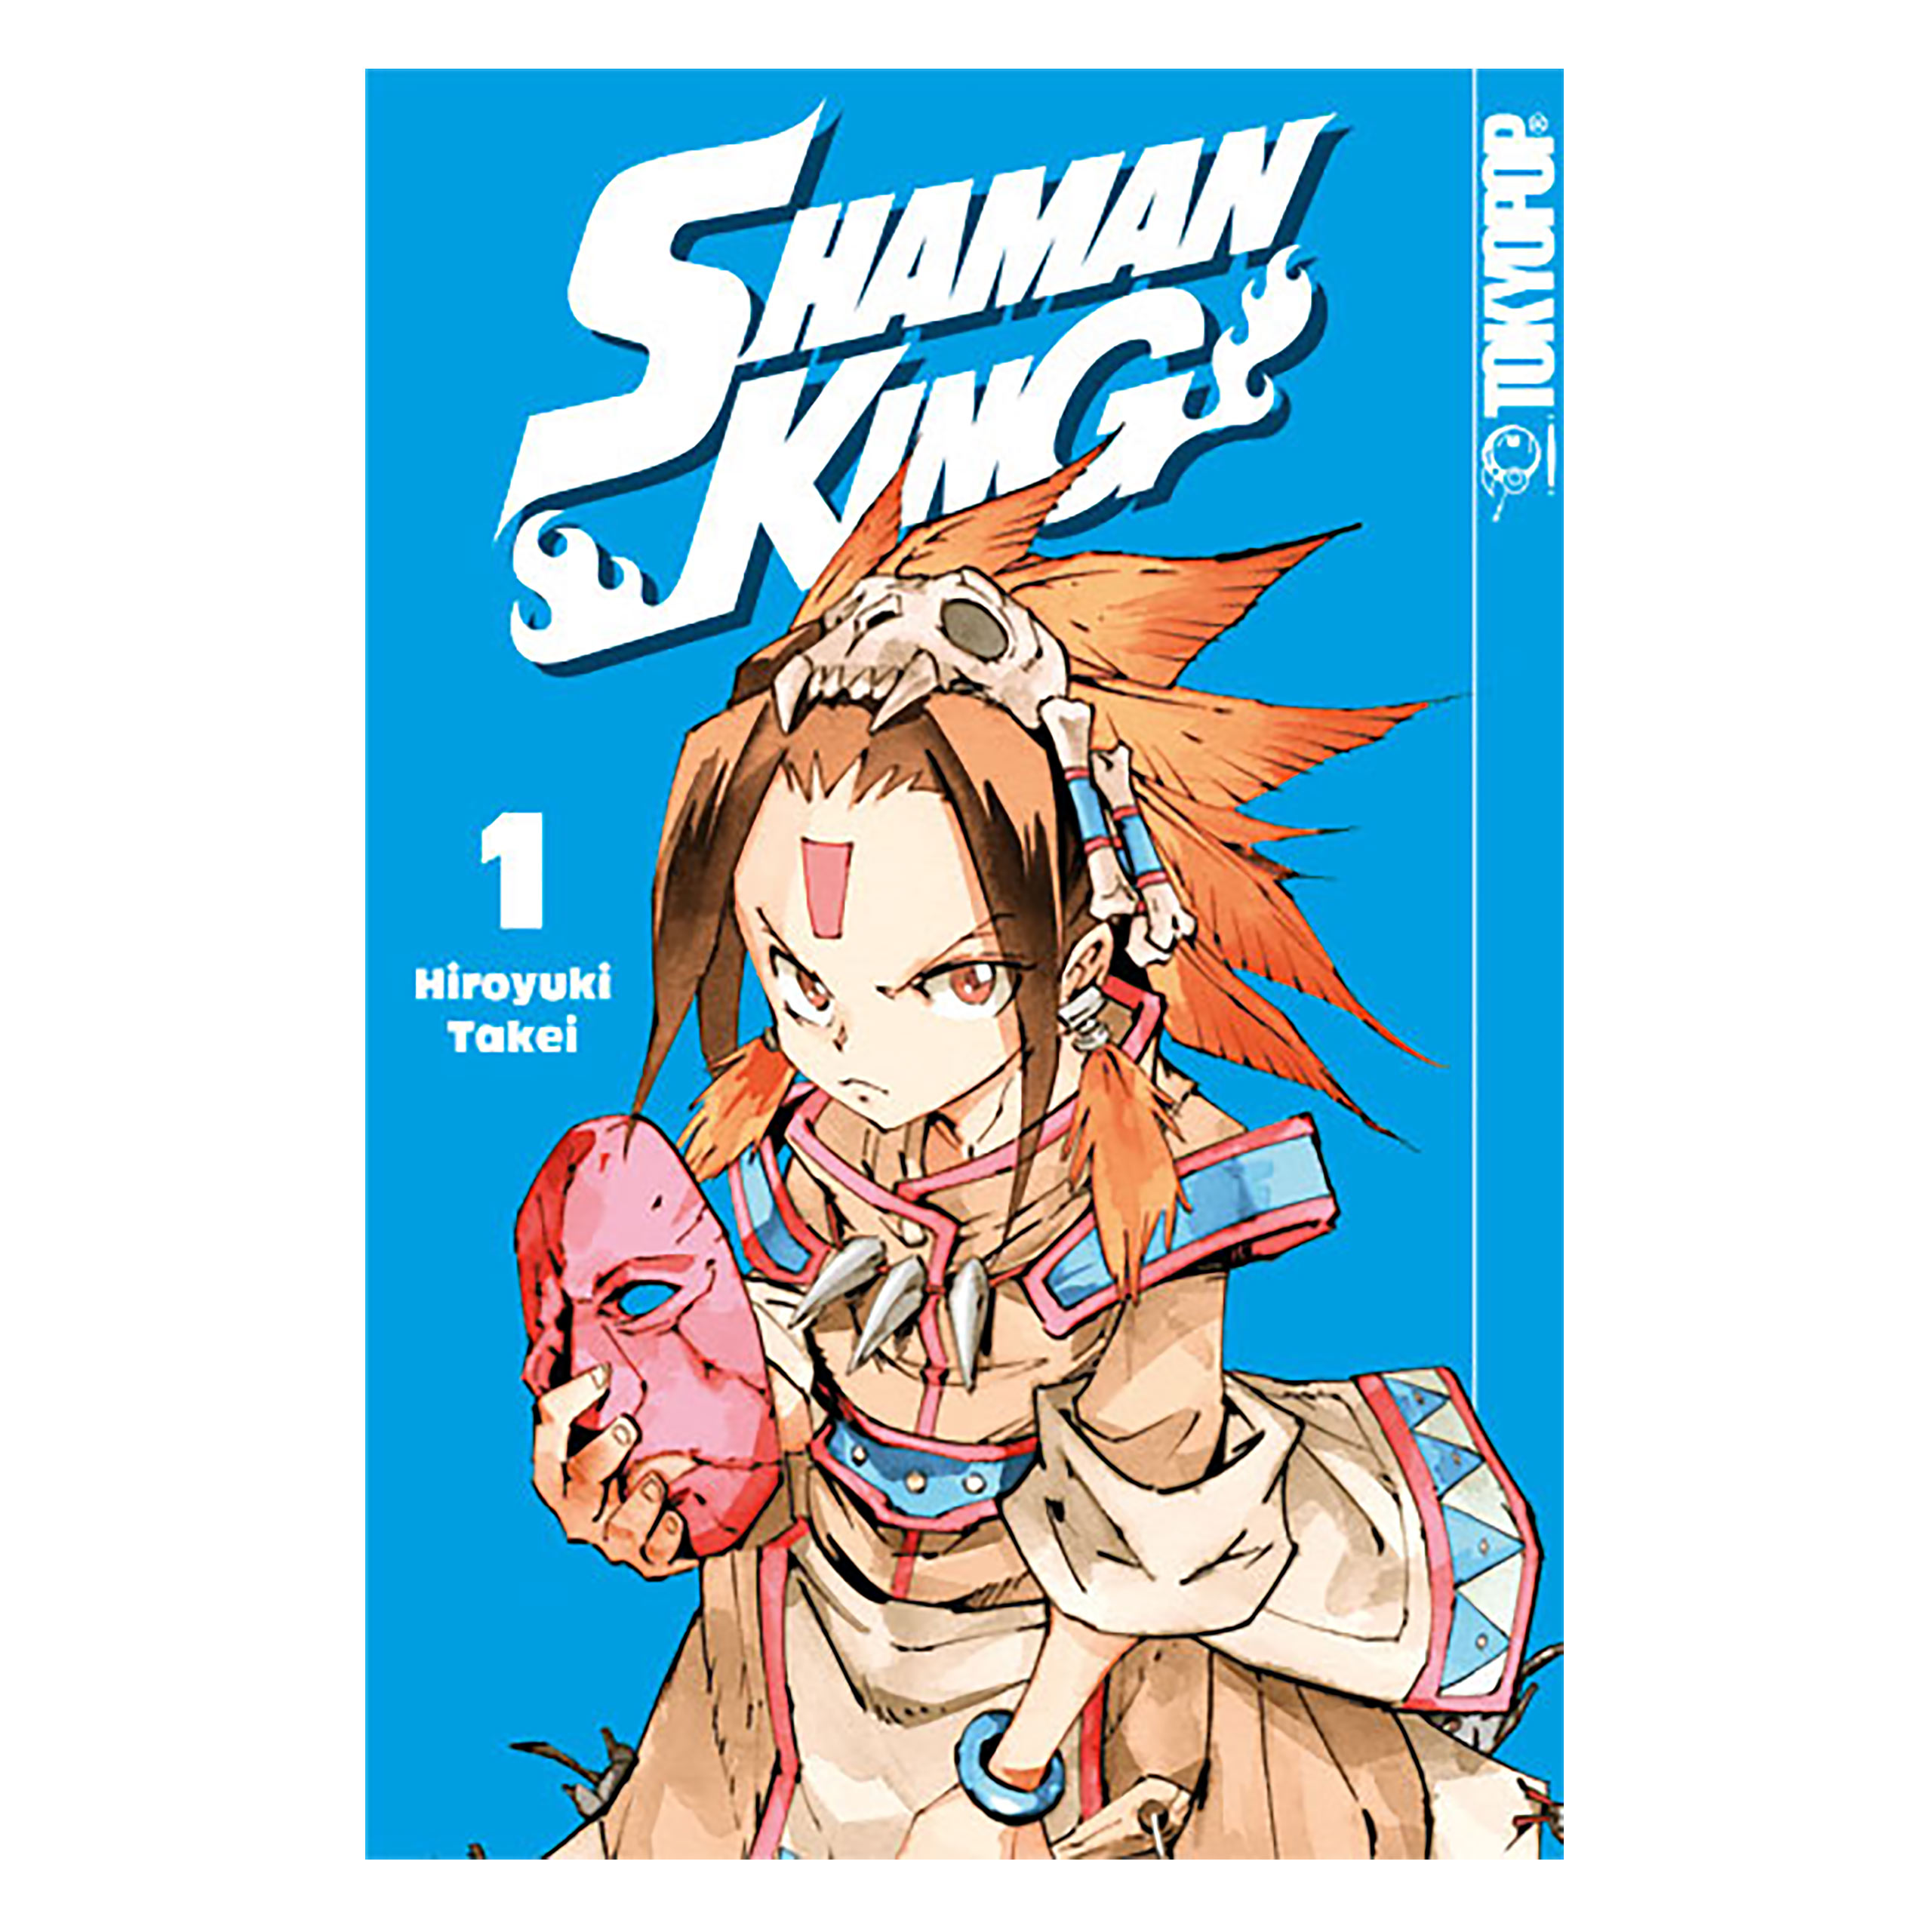 Shaman King - Volume 1 Paperback